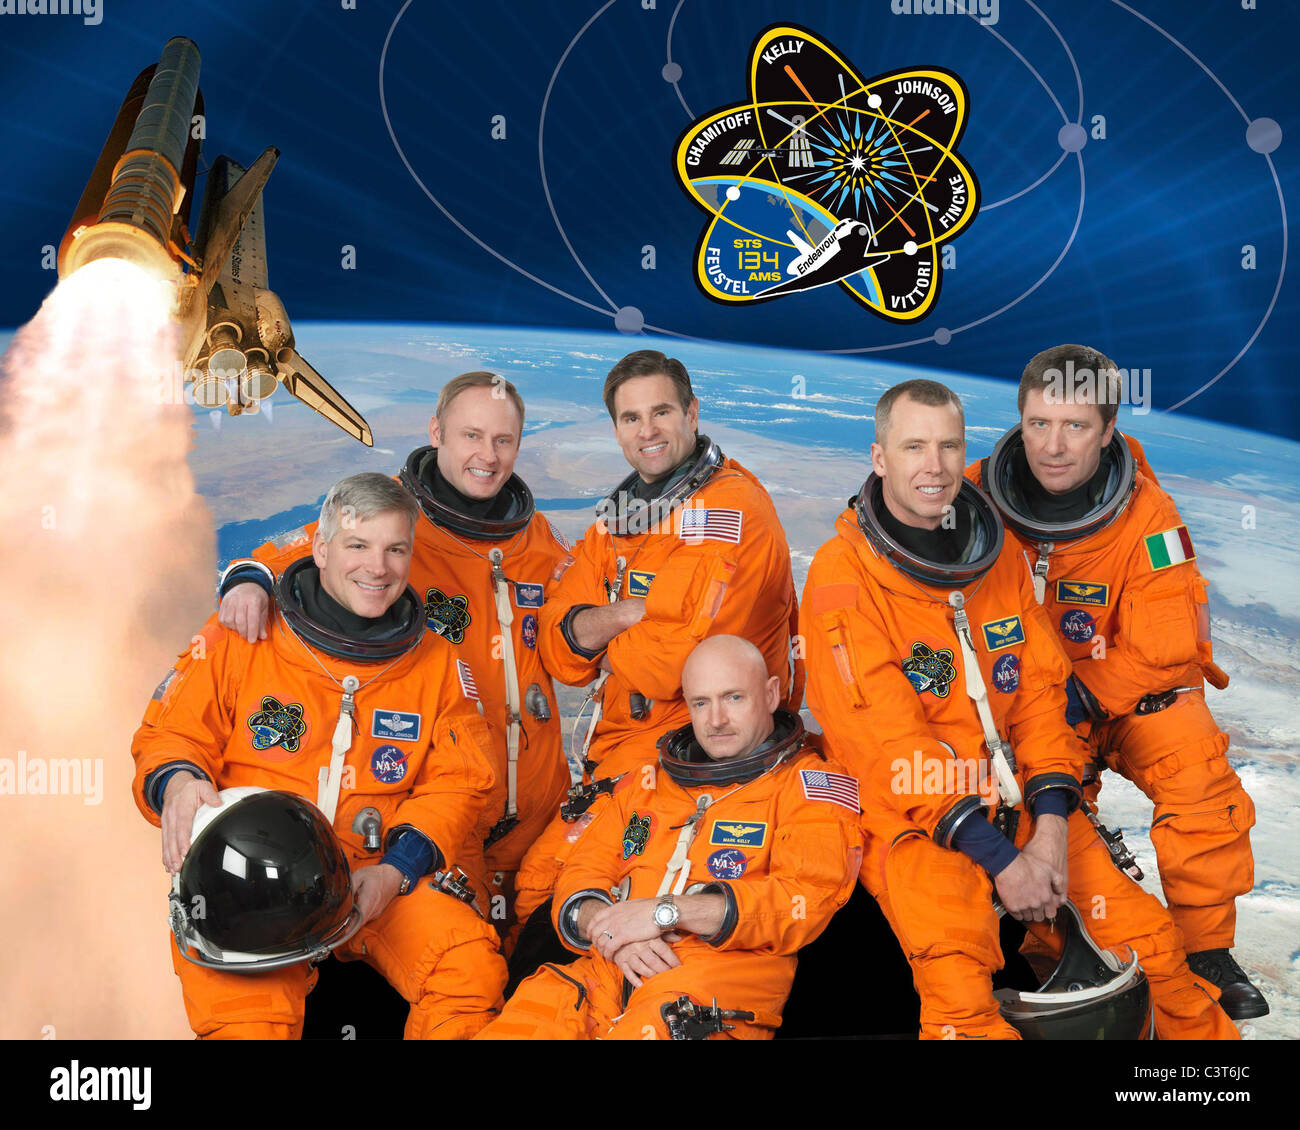 STS-134 equipaggio ritratto vestito in versioni di formazione del loro lancio navetta e tute di entrata, di STS-134 astronauti (nella foto in senso orario) sono gli astronauti della NASA Mark Kelly (centro inferiore), comandante; Gregorio H. Johnson, pilota; Michael Fincke, Greg Chamitoff, Andrew Feustel e l'Agenzia Spaziale Europea Roberto Vittori, tutti gli specialisti di missione. Credito di immagine: la NASA a gennaio 15, 2010 Foto Stock